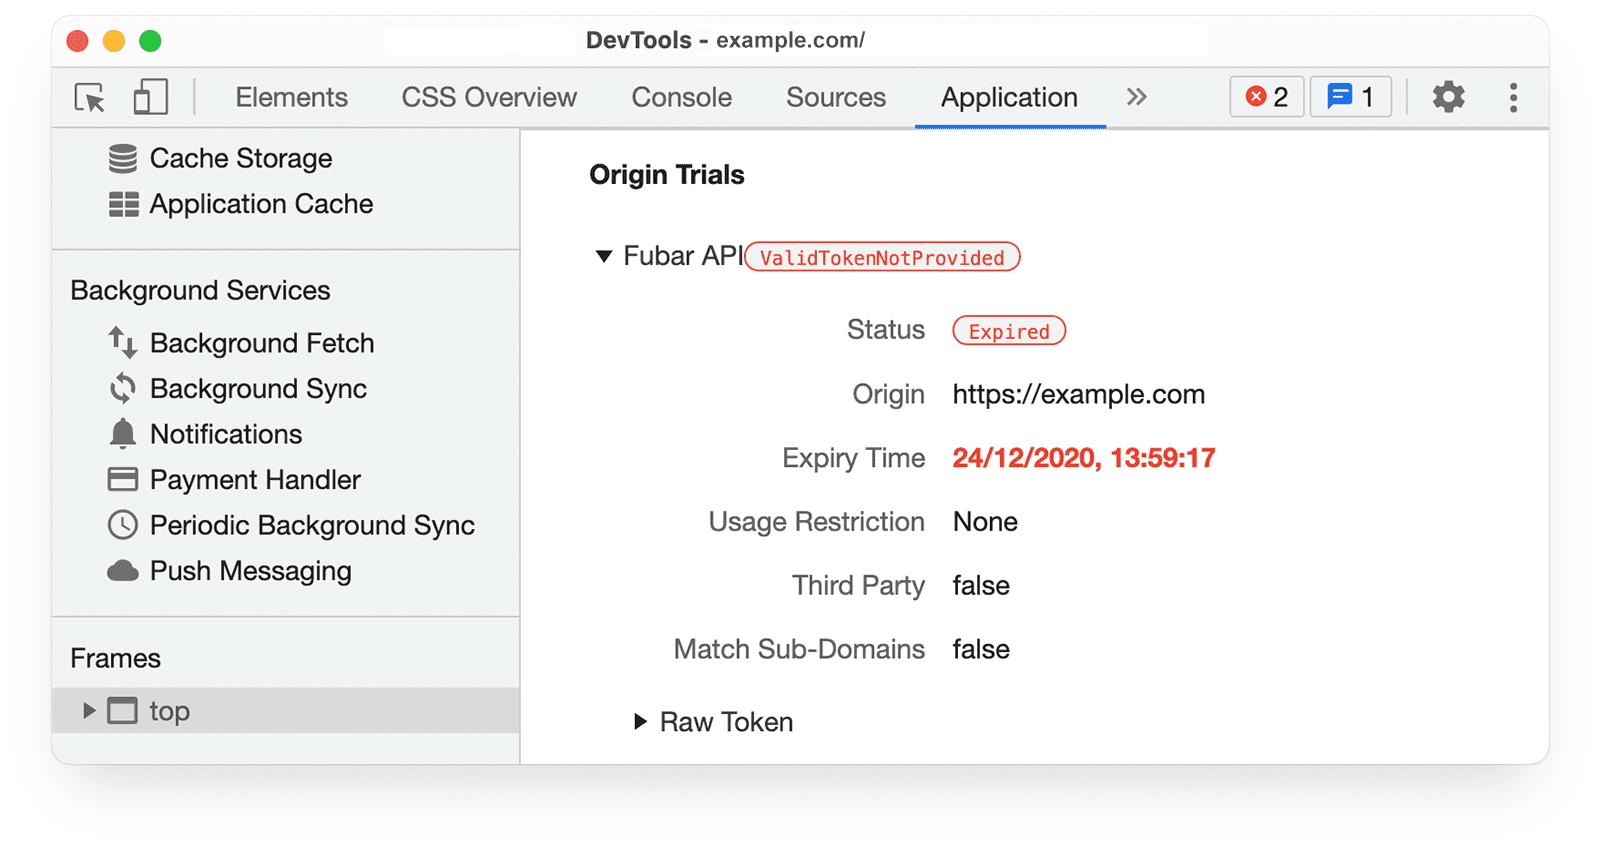 Chrome DevTools 
ऐप्लिकेशन पैनल में ऑरिजिन ट्रायल की जानकारी, स्टेटस: हो गया हाइलाइट किया गया है.